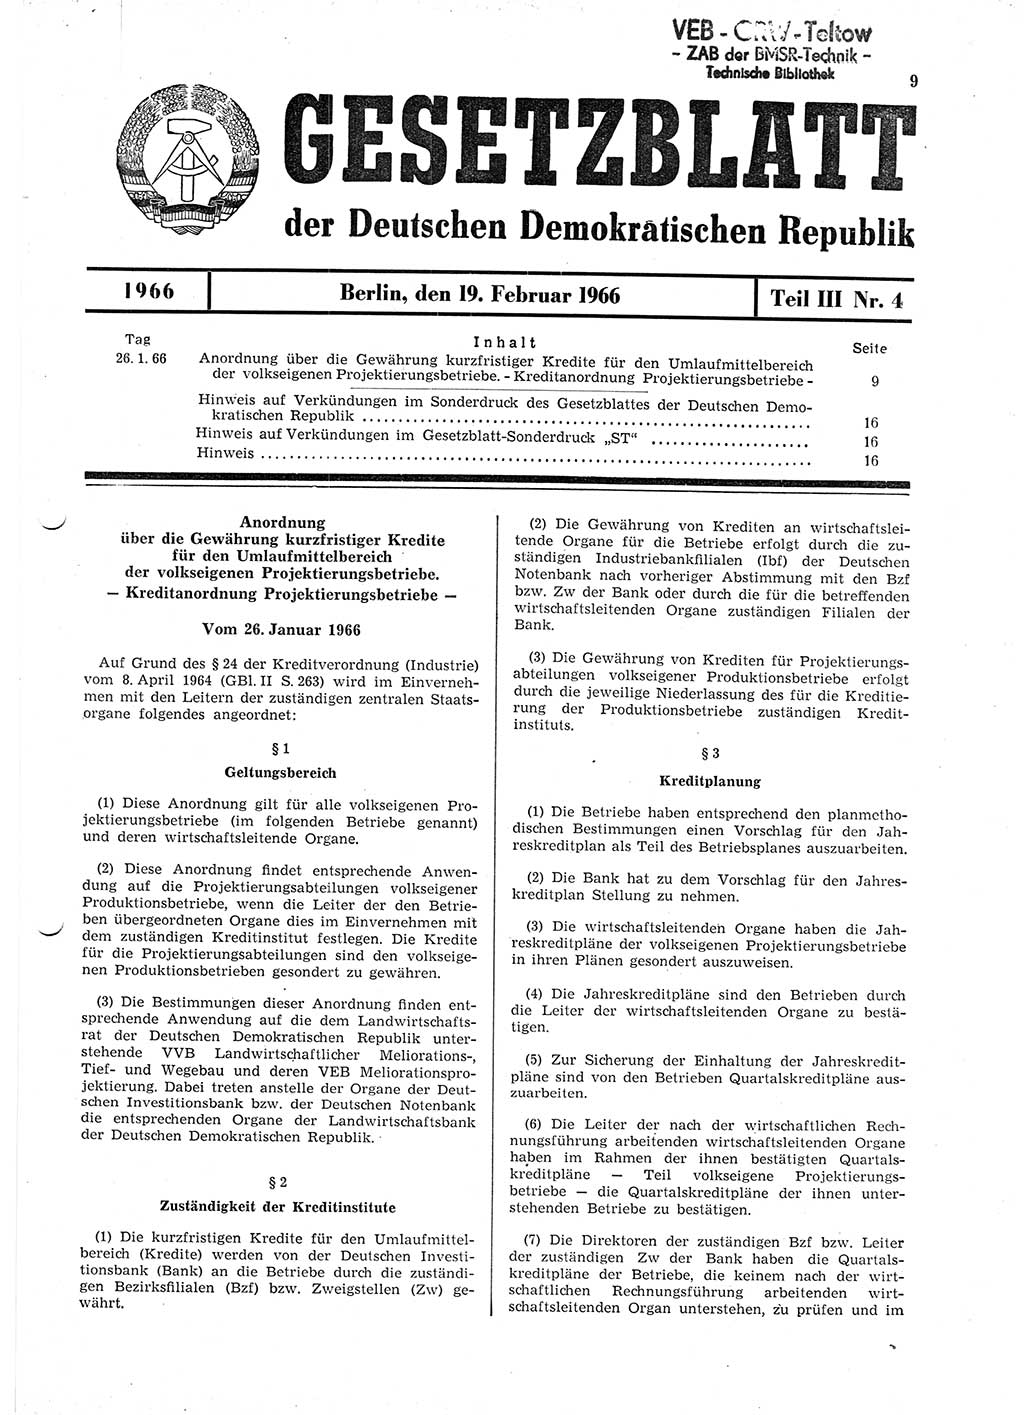 Gesetzblatt (GBl.) der Deutschen Demokratischen Republik (DDR) Teil ⅠⅠⅠ 1966, Seite 9 (GBl. DDR ⅠⅠⅠ 1966, S. 9)